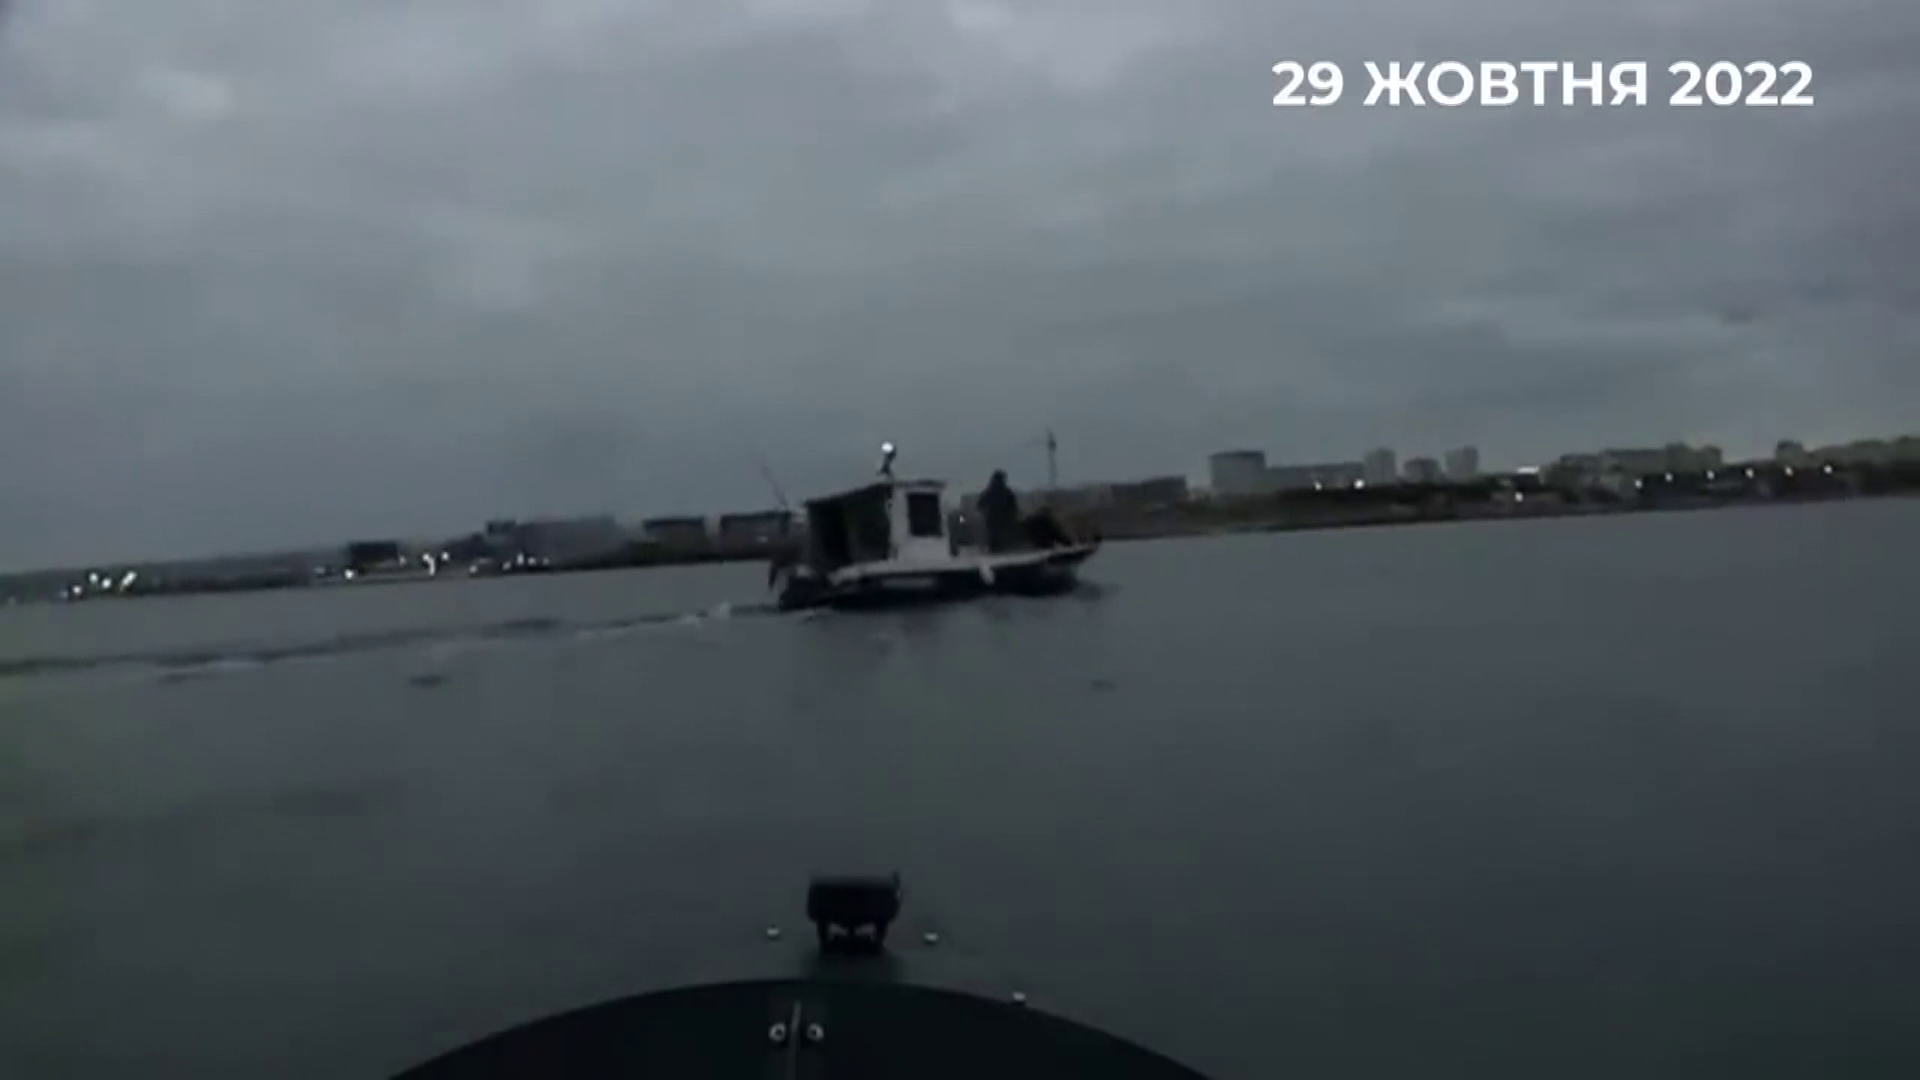 Drónokkal támadtak az orosz flottára az ukránok